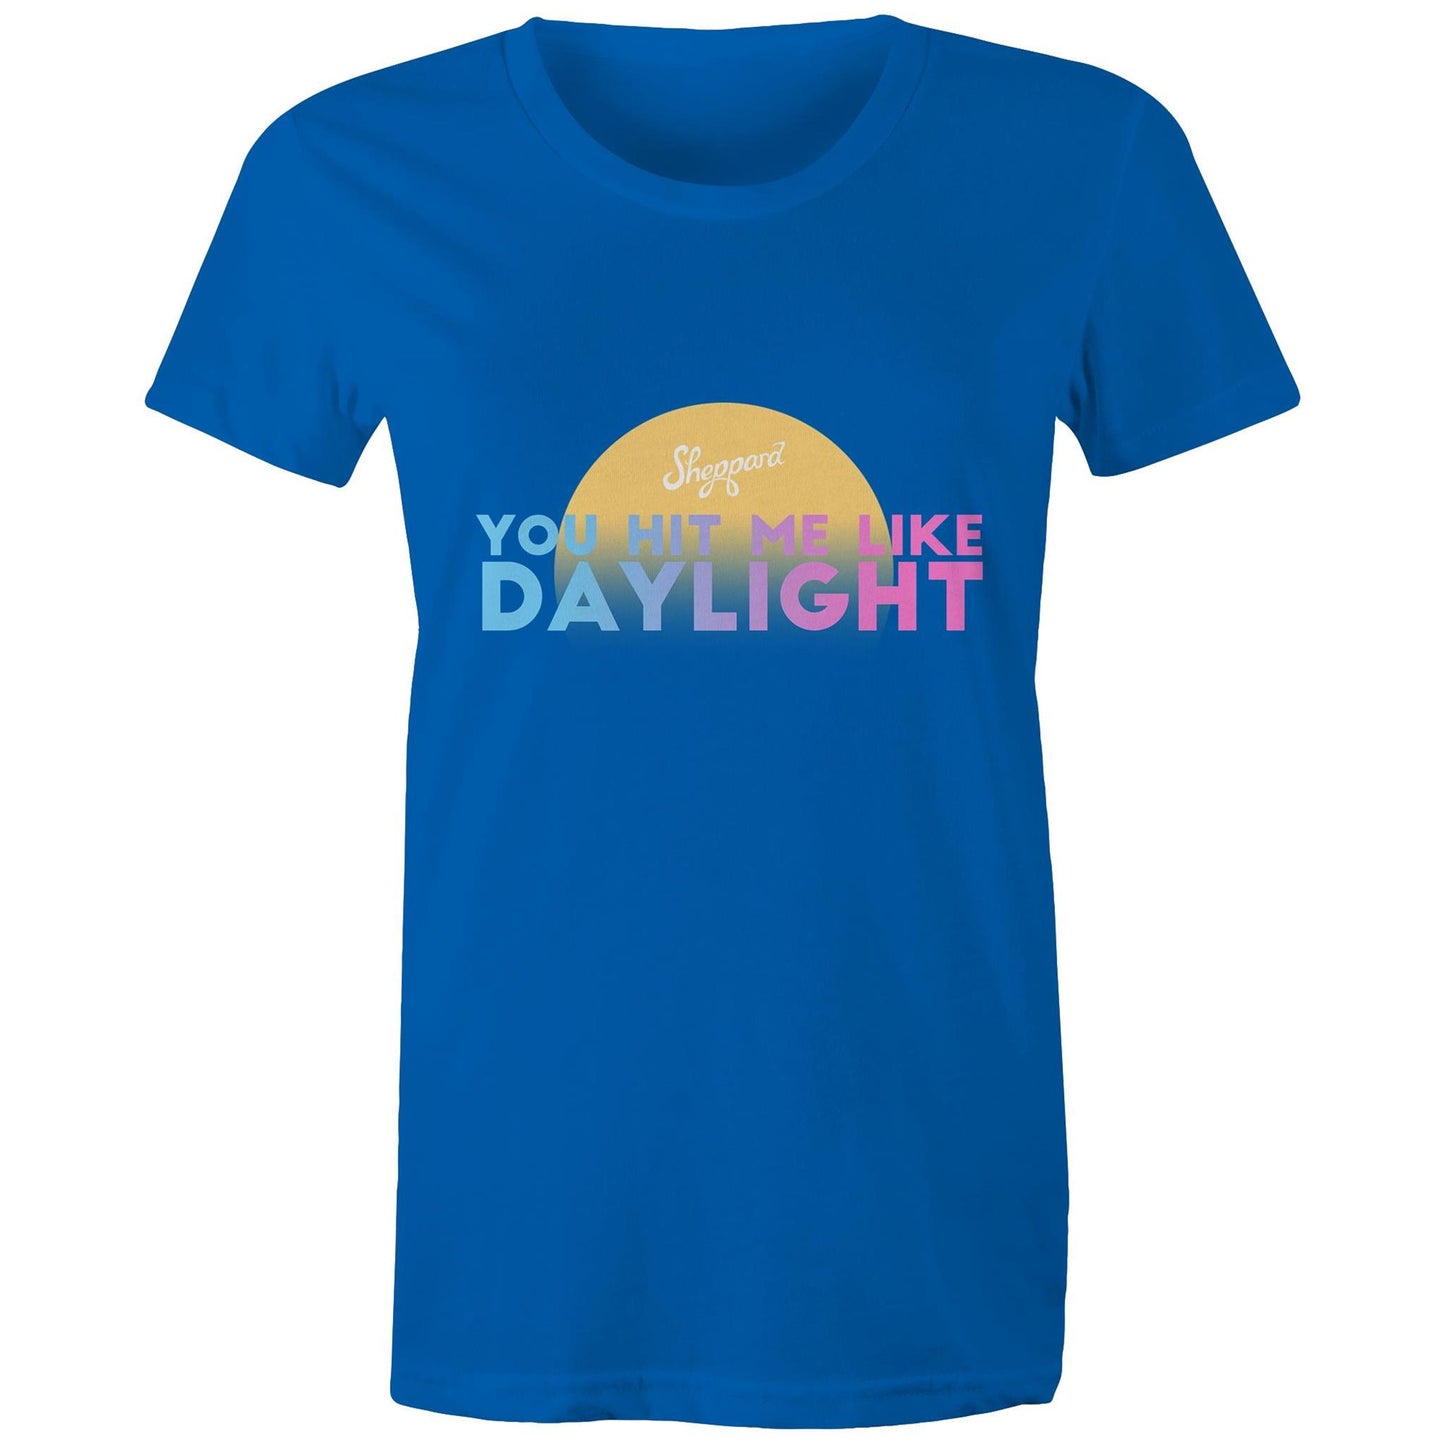 NEW! Daylight - Maple T-Shirt